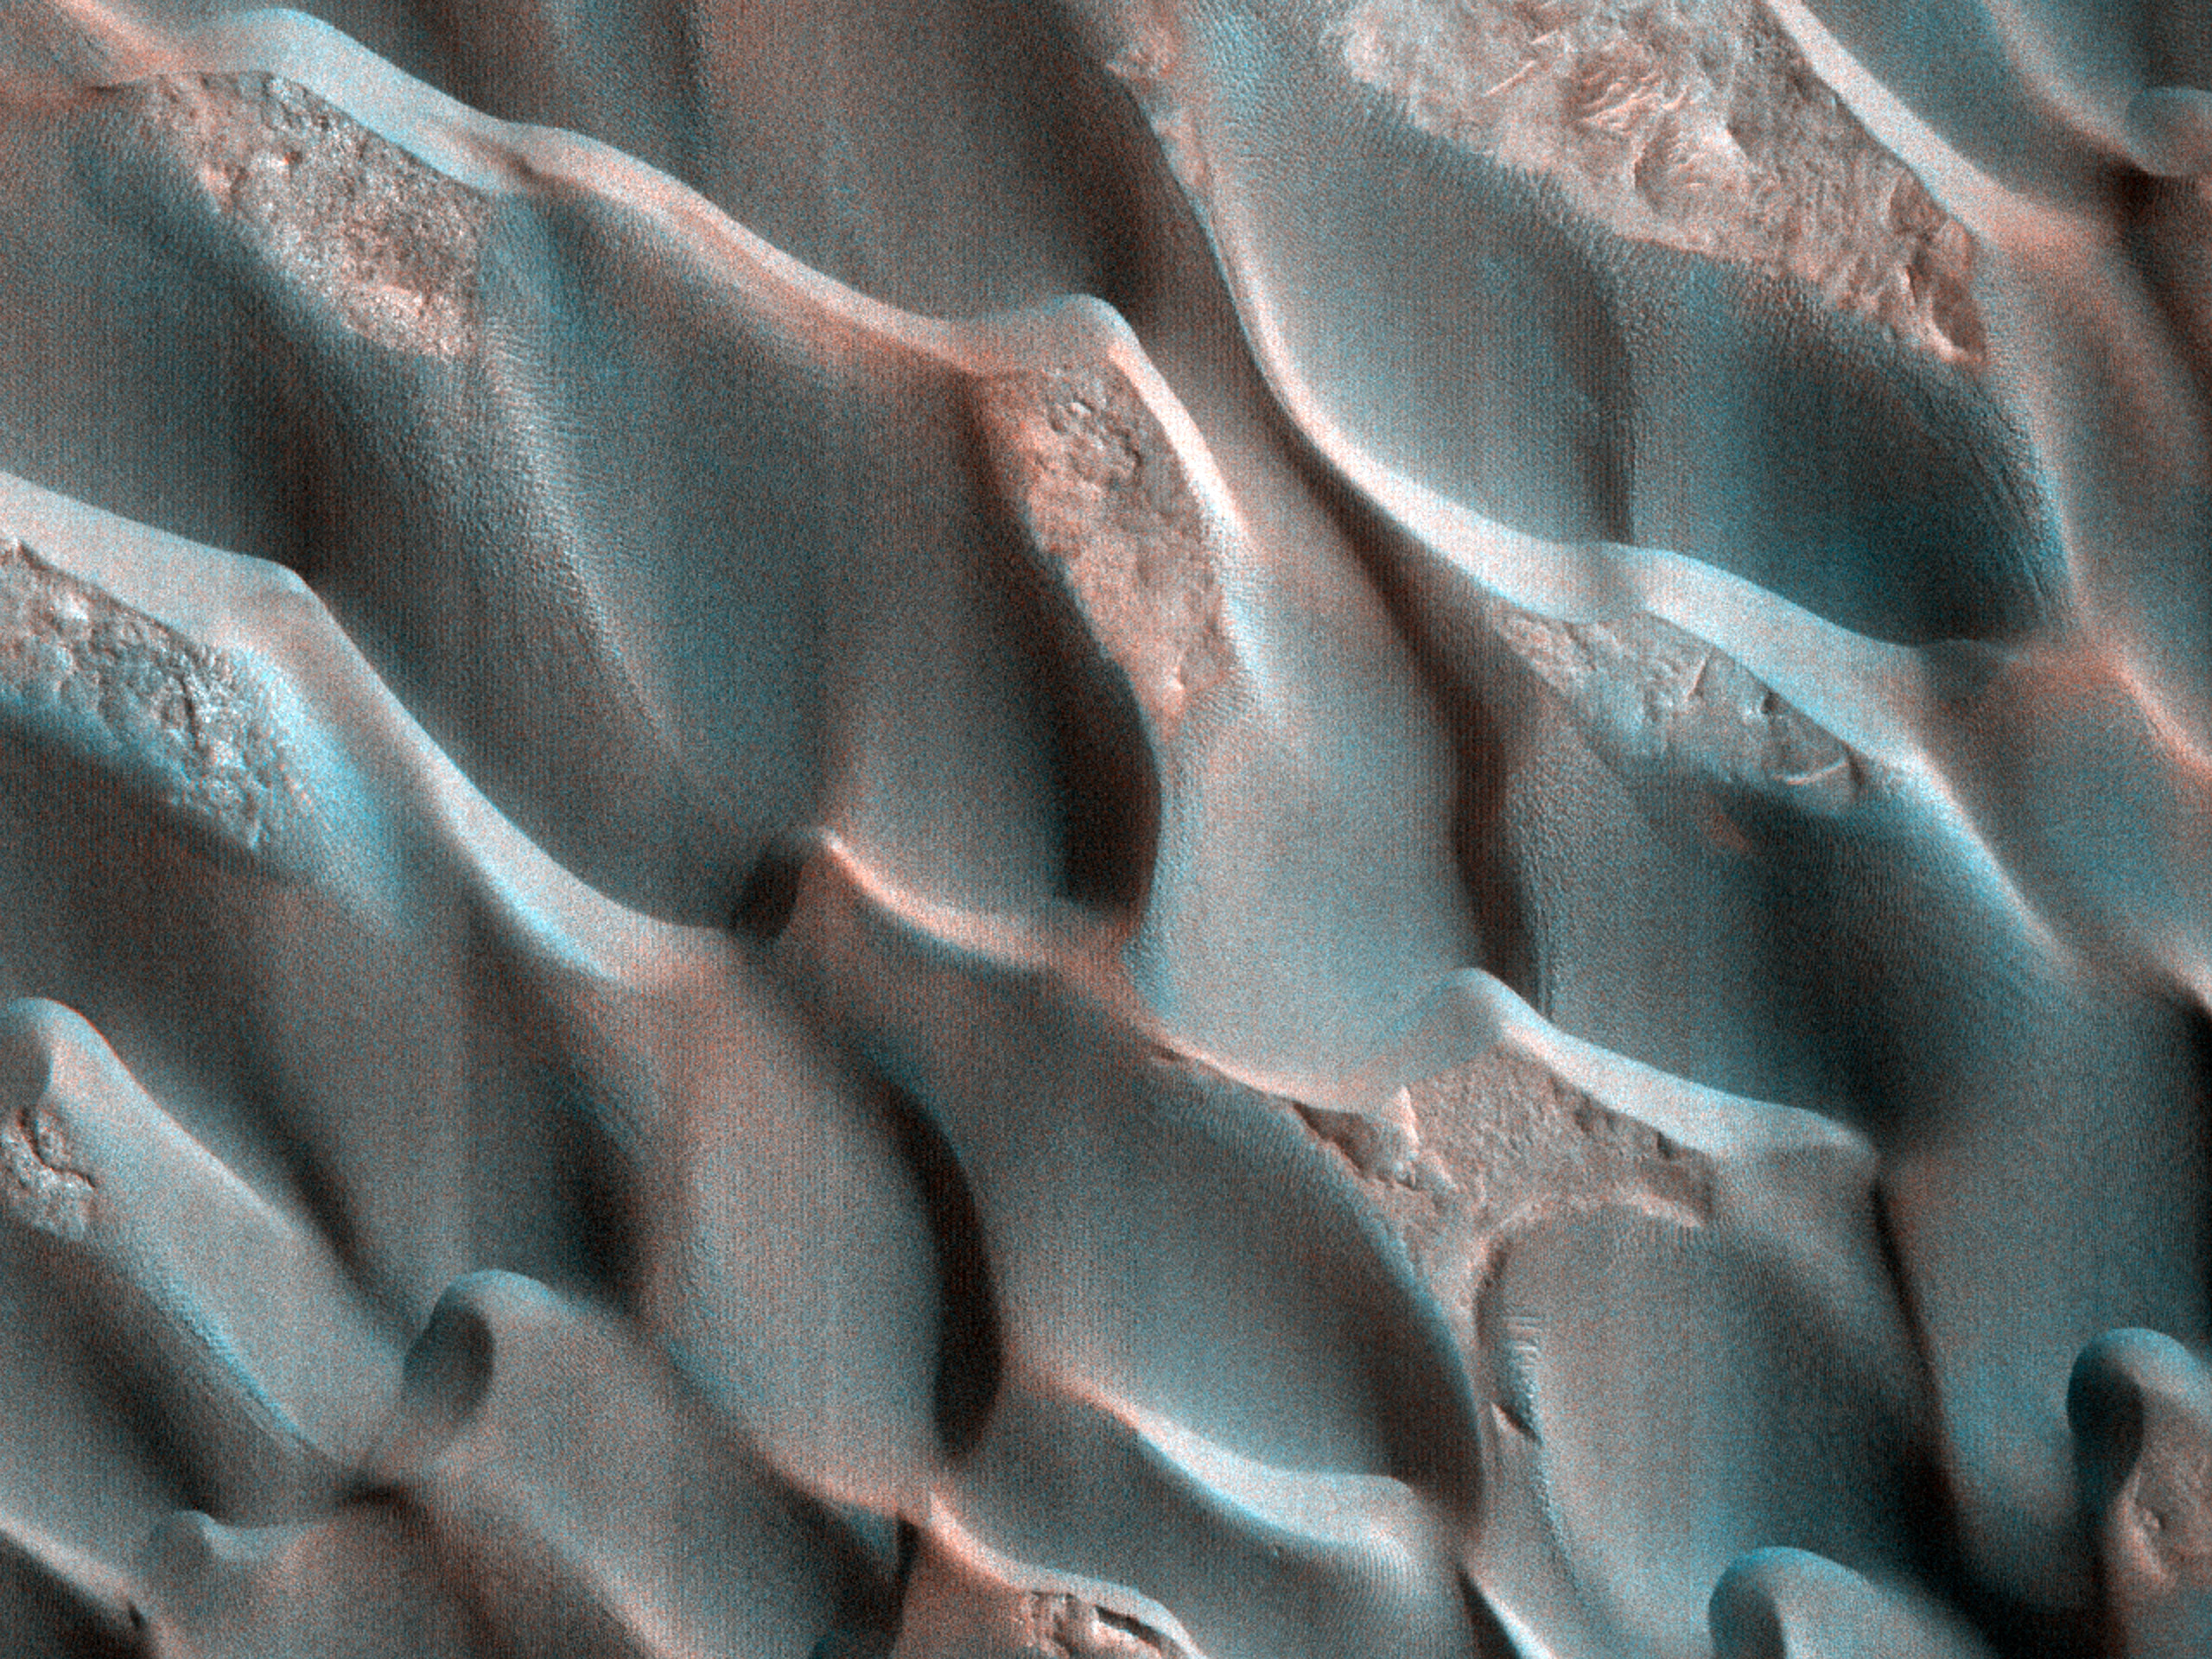 Dunes in Becquerel Crater